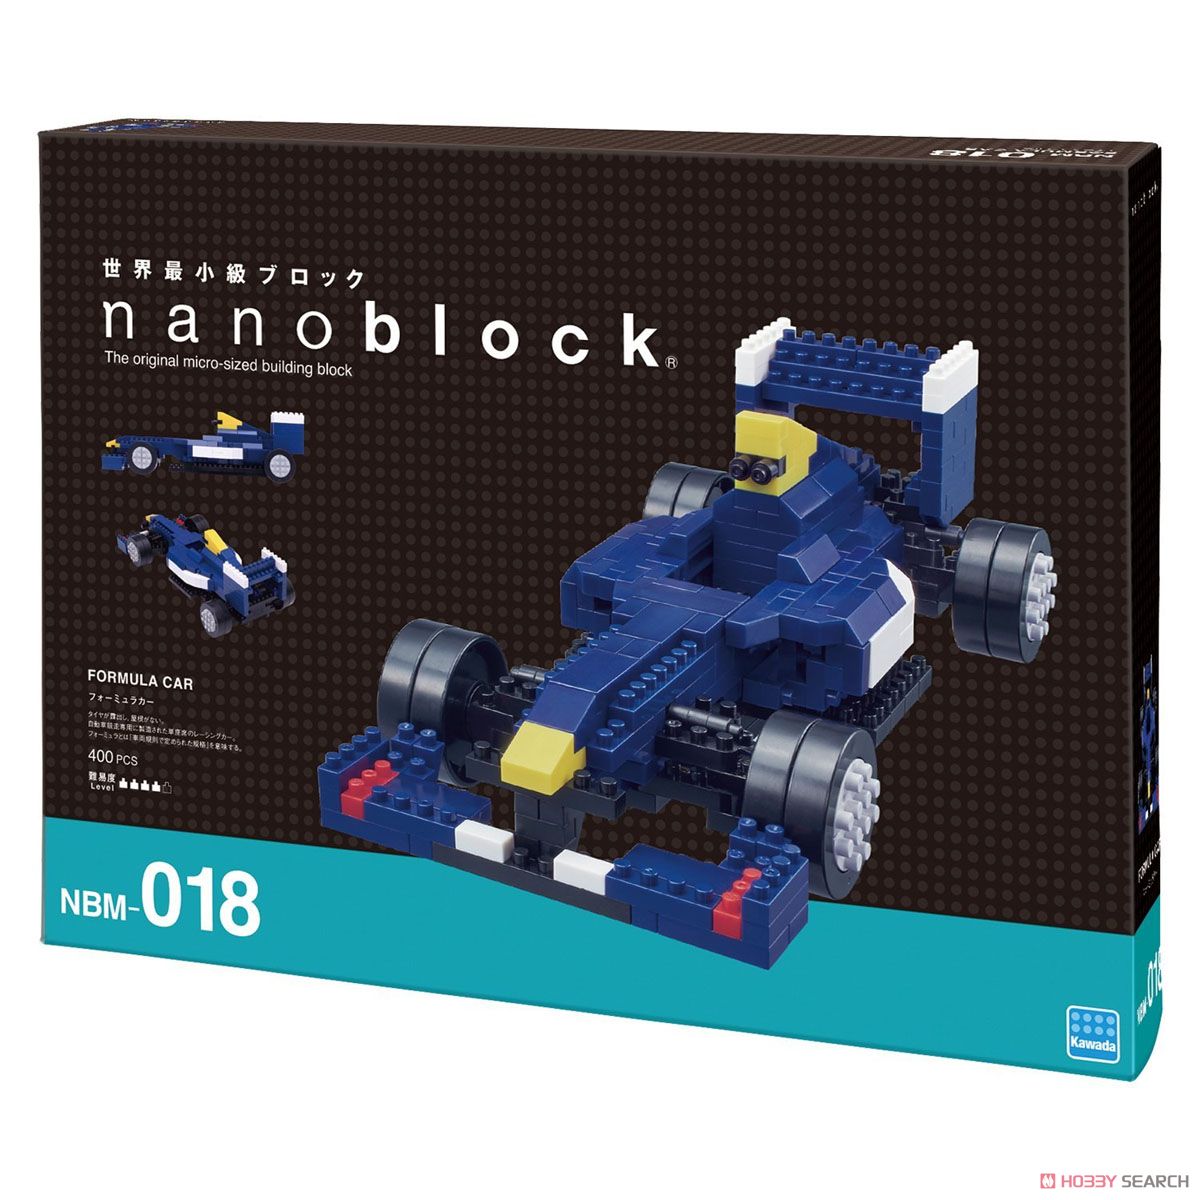 nanoblock フォーミュラカー (ブロック) パッケージ1